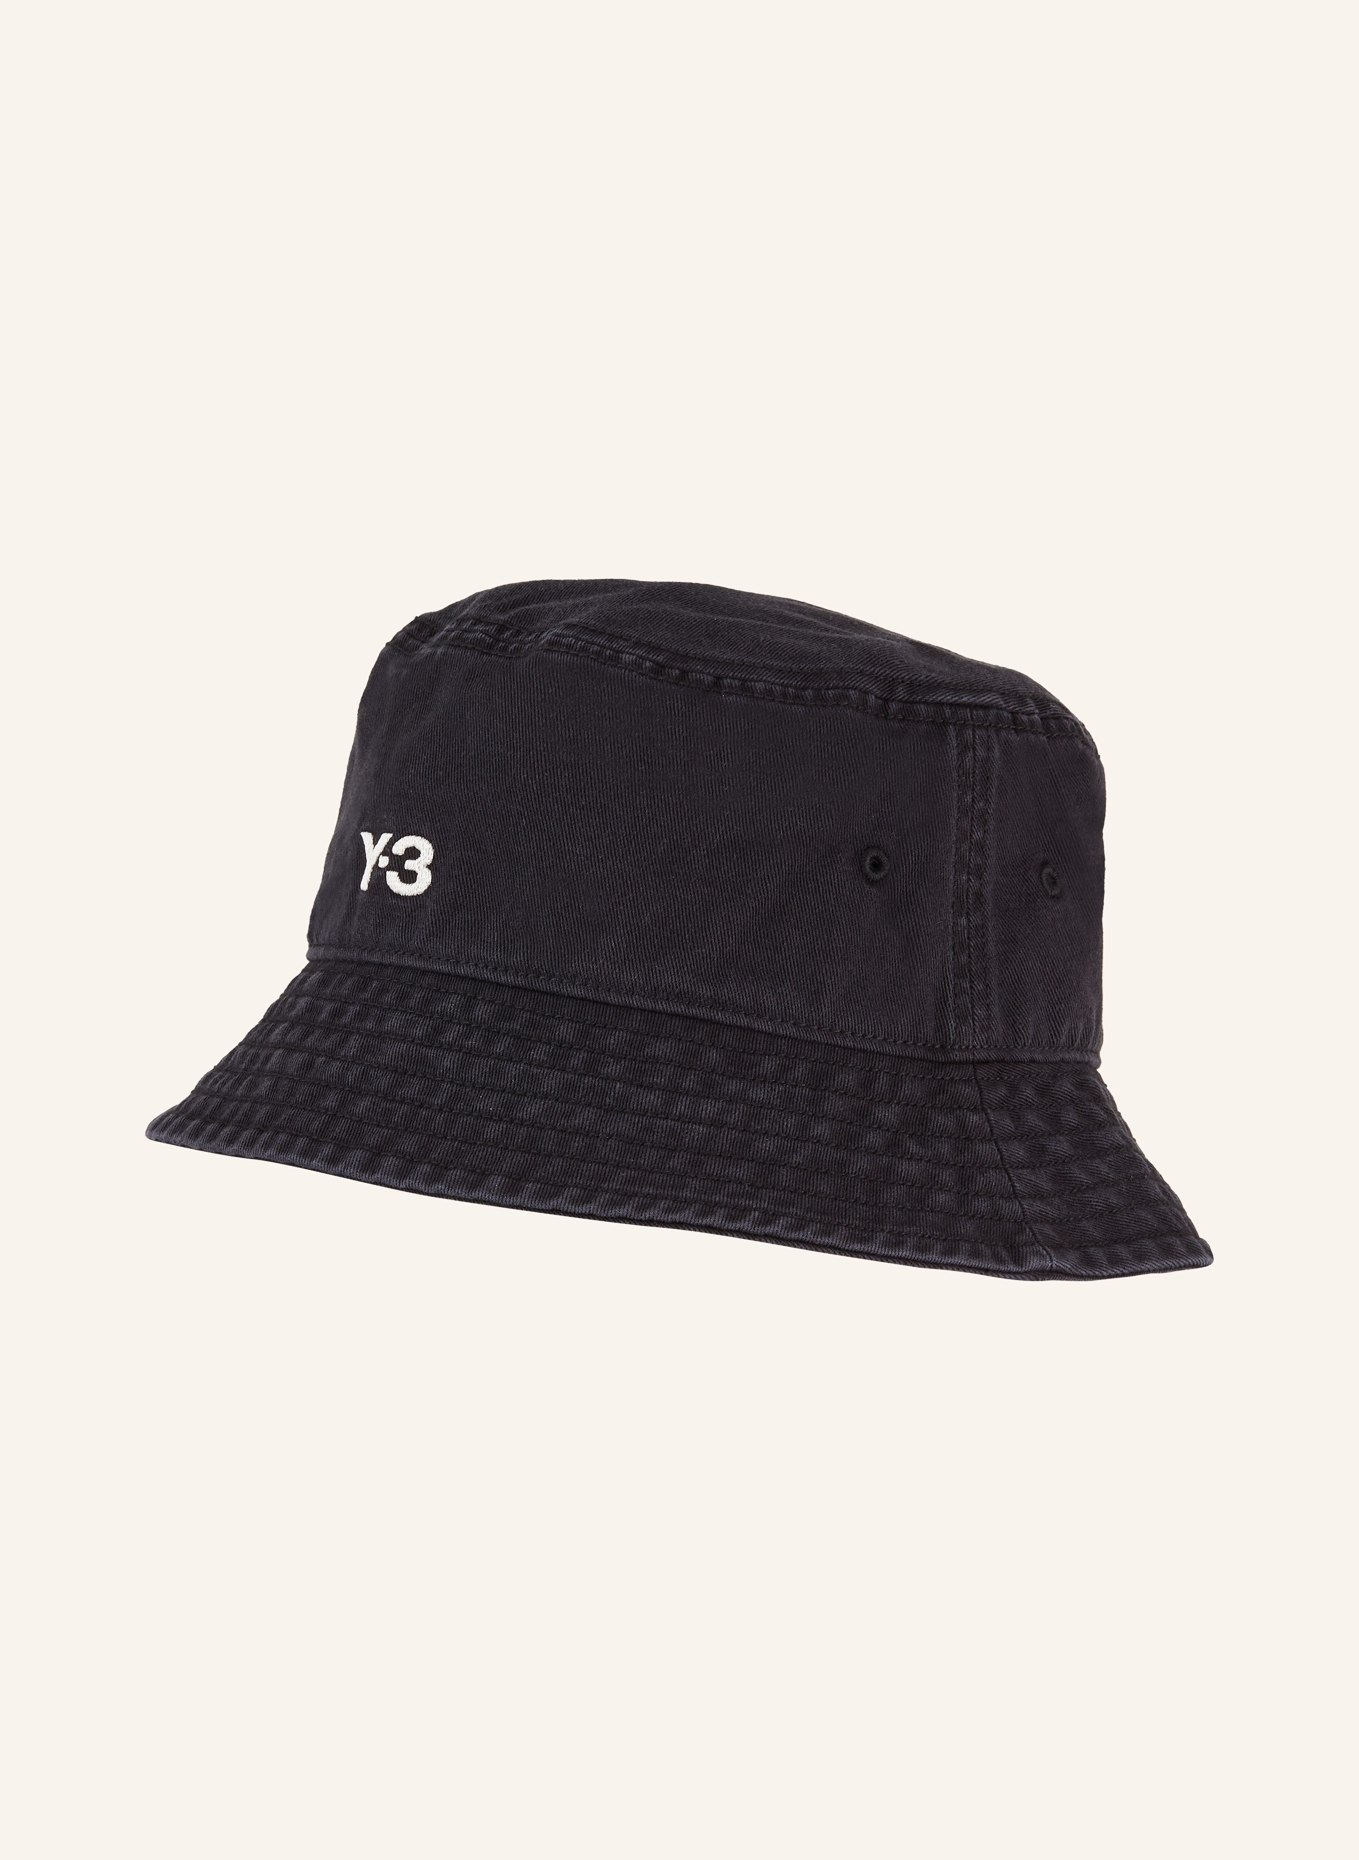 Y-3 Bucket hat, Color: BLACK (Image 1)